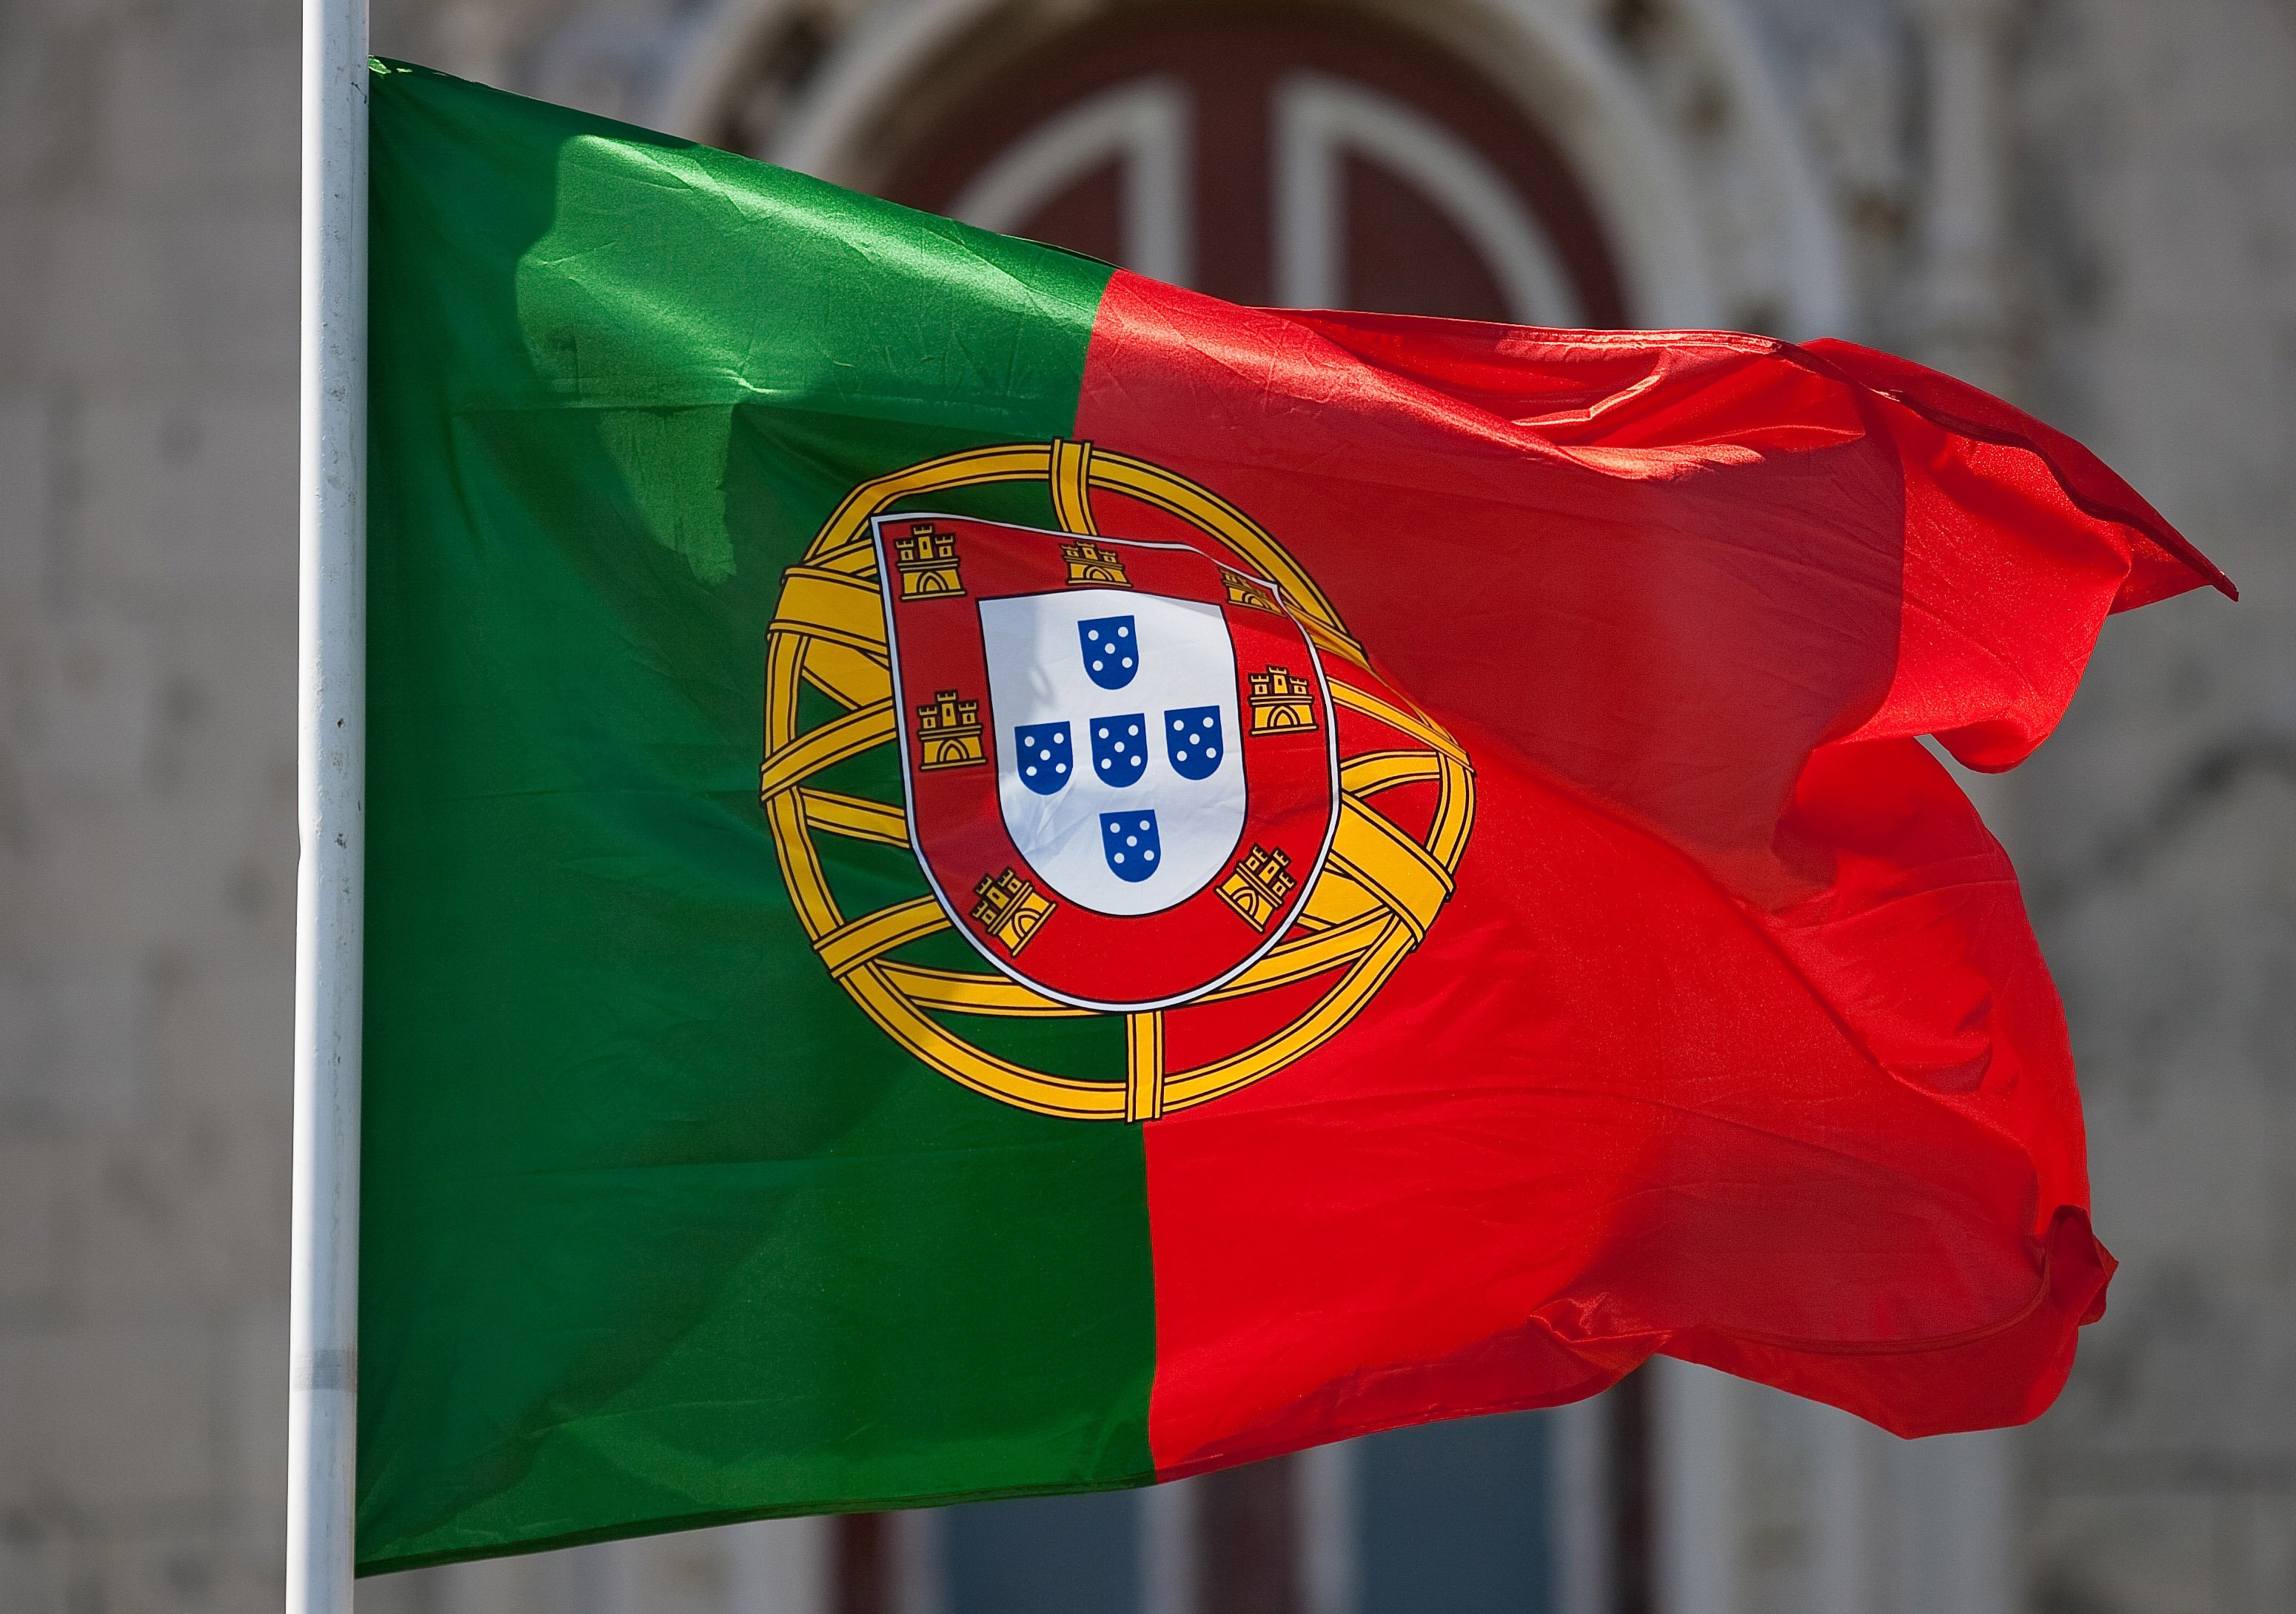 Ανησυχία για την πορεία των διαρθρωτικών μεταρρυθμίσεων στην Πορτογαλία